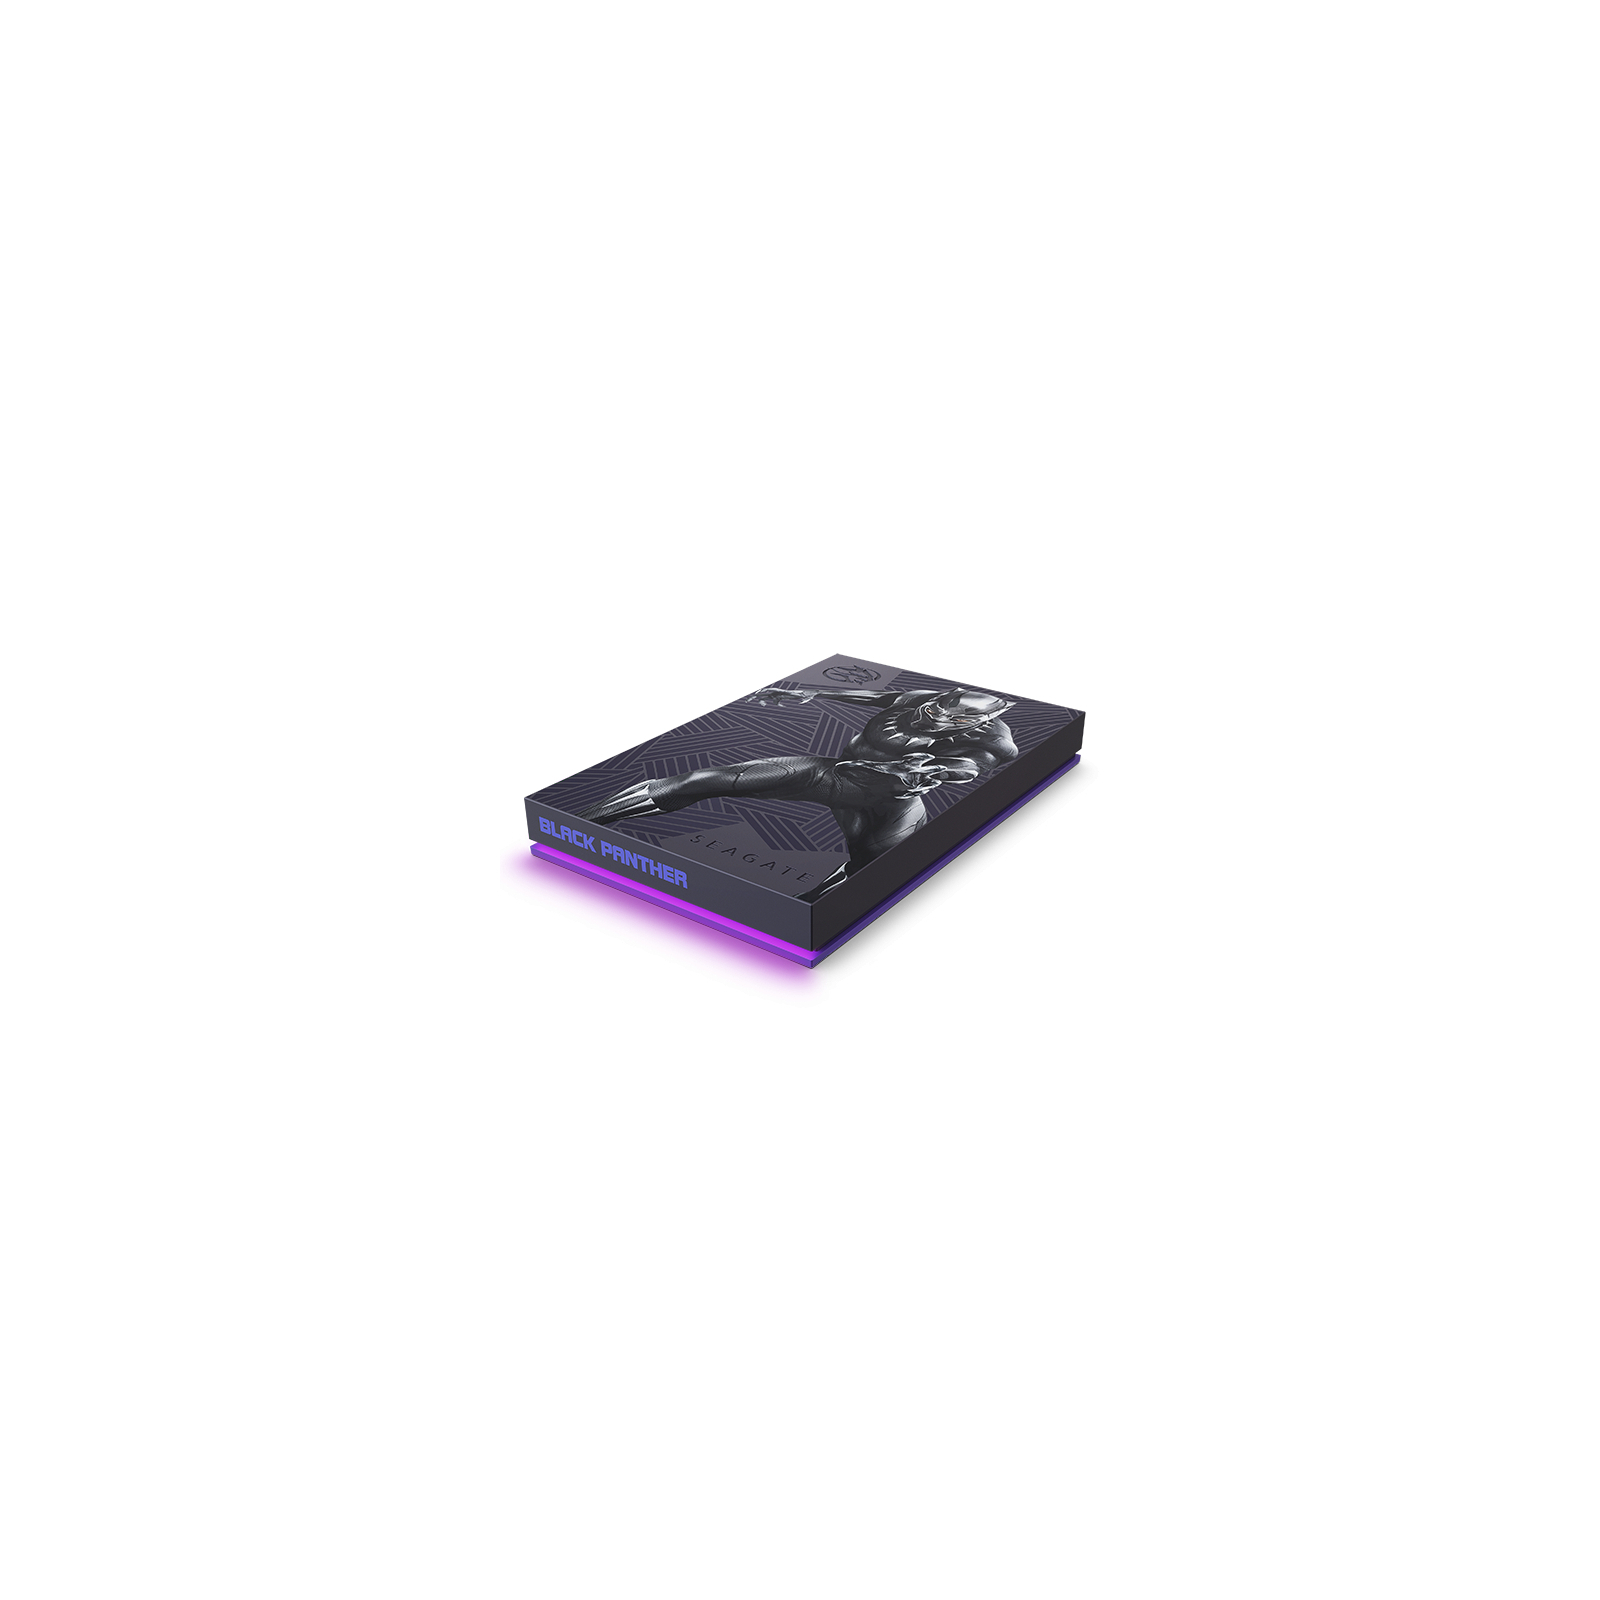 Зовнішній жорсткий диск 2.5" 2TB Black Panther FireCuda Gaming Drive Seagate (STLX2000401) зображення 3